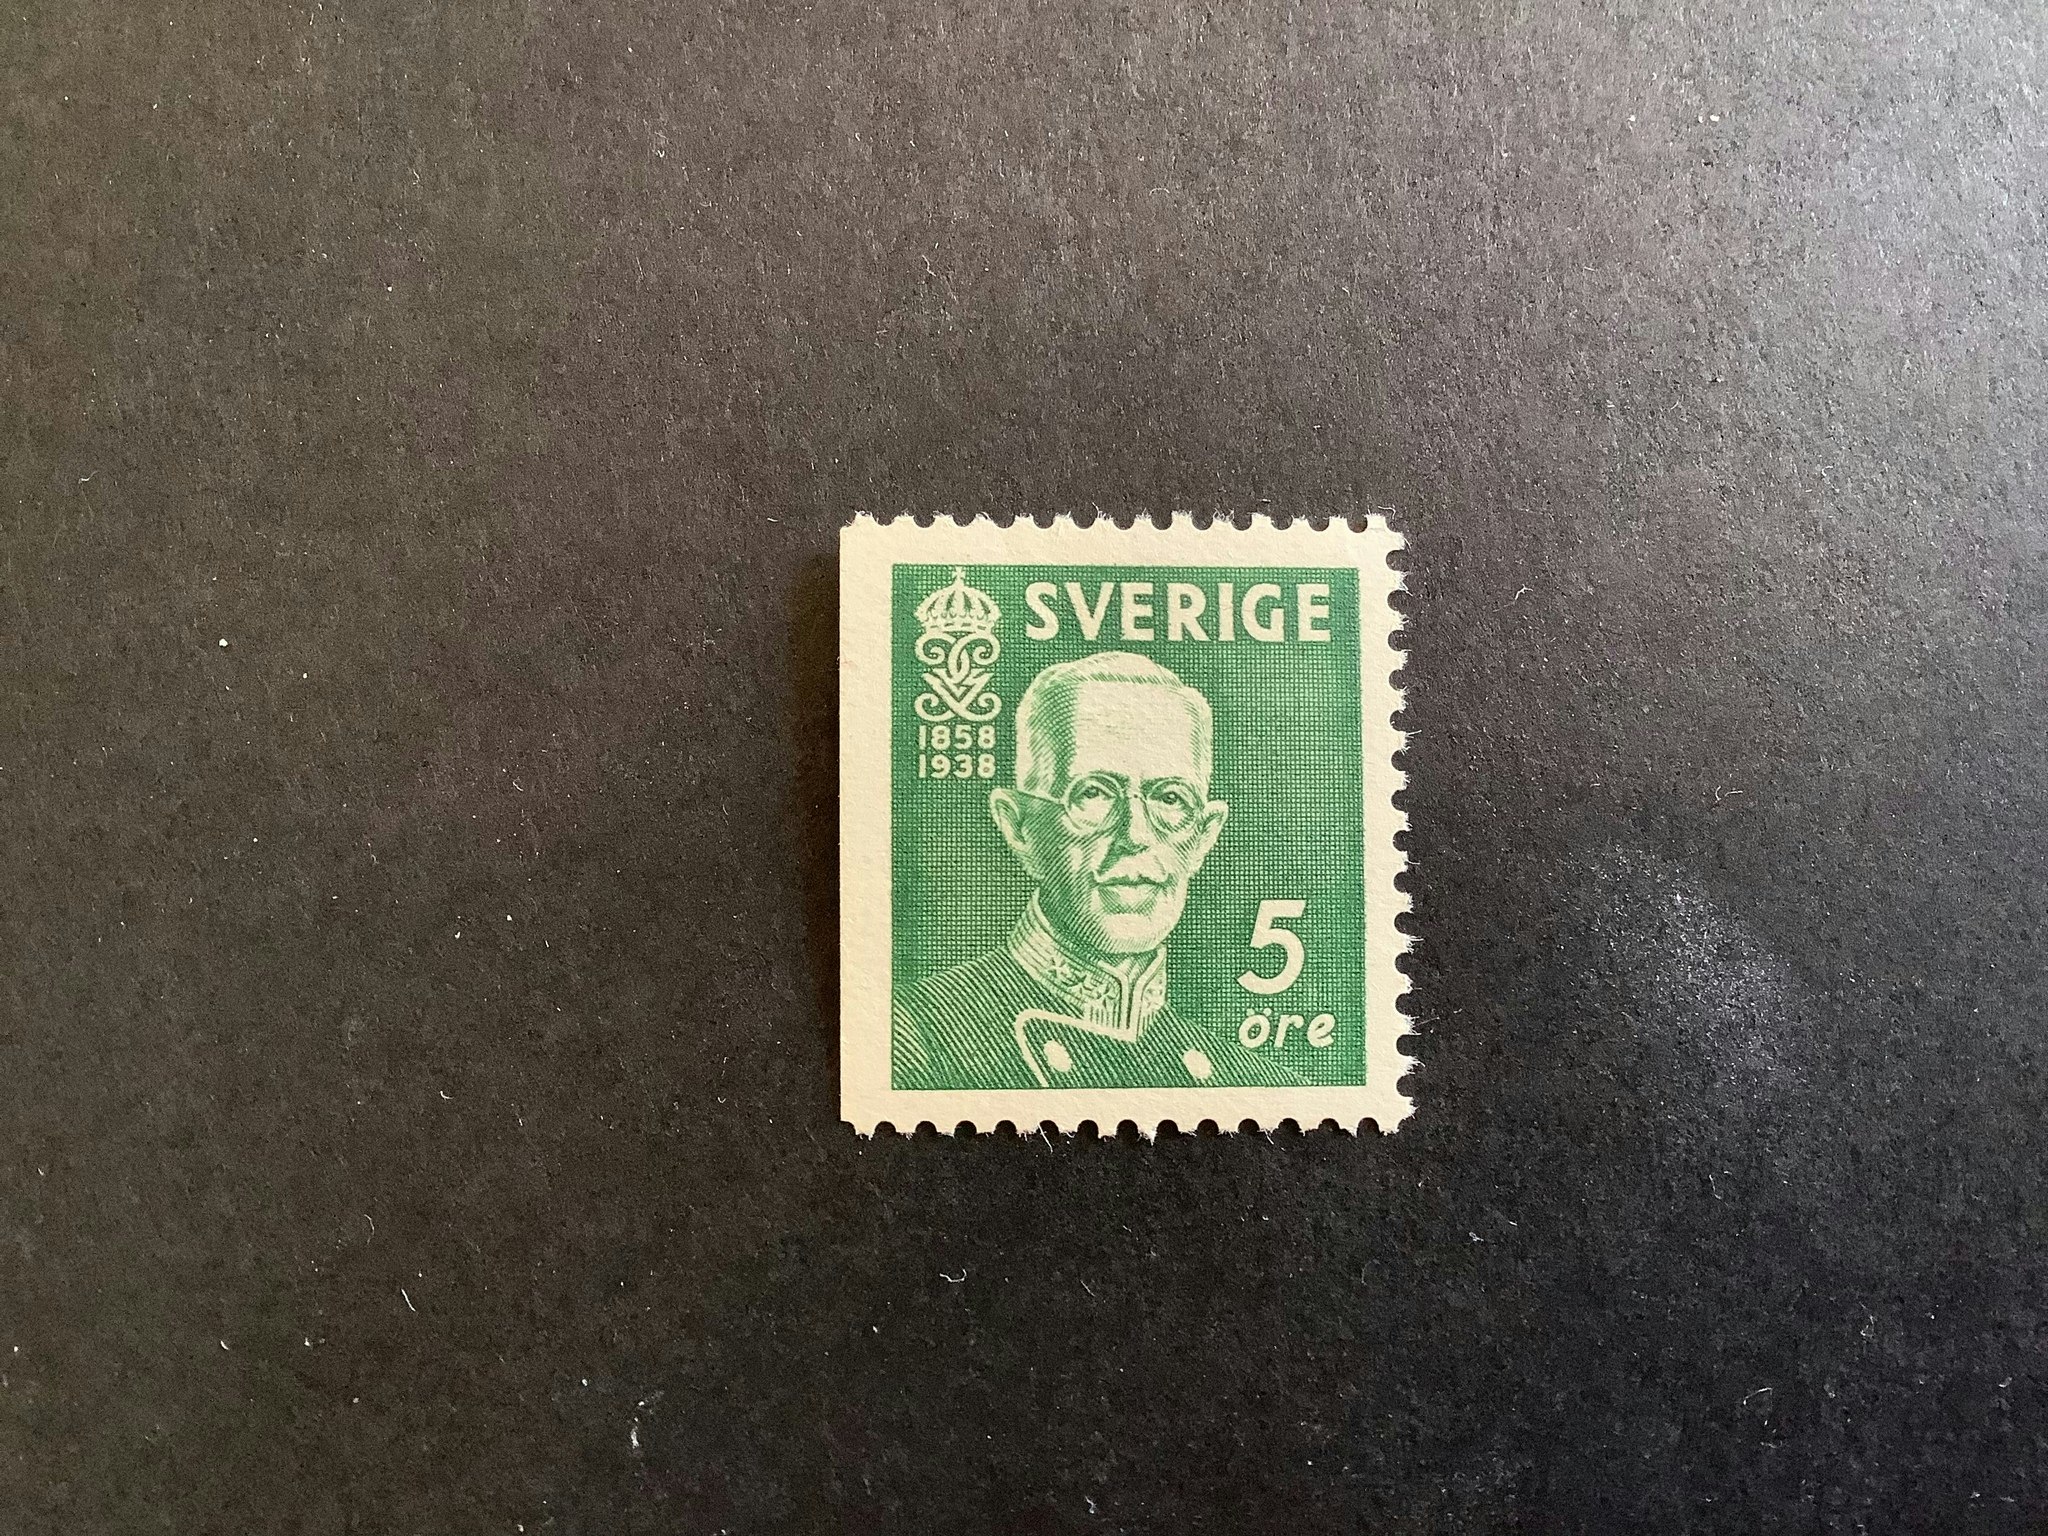 Gustaf V 80 år facit nr 266 B1 postfriskt märke